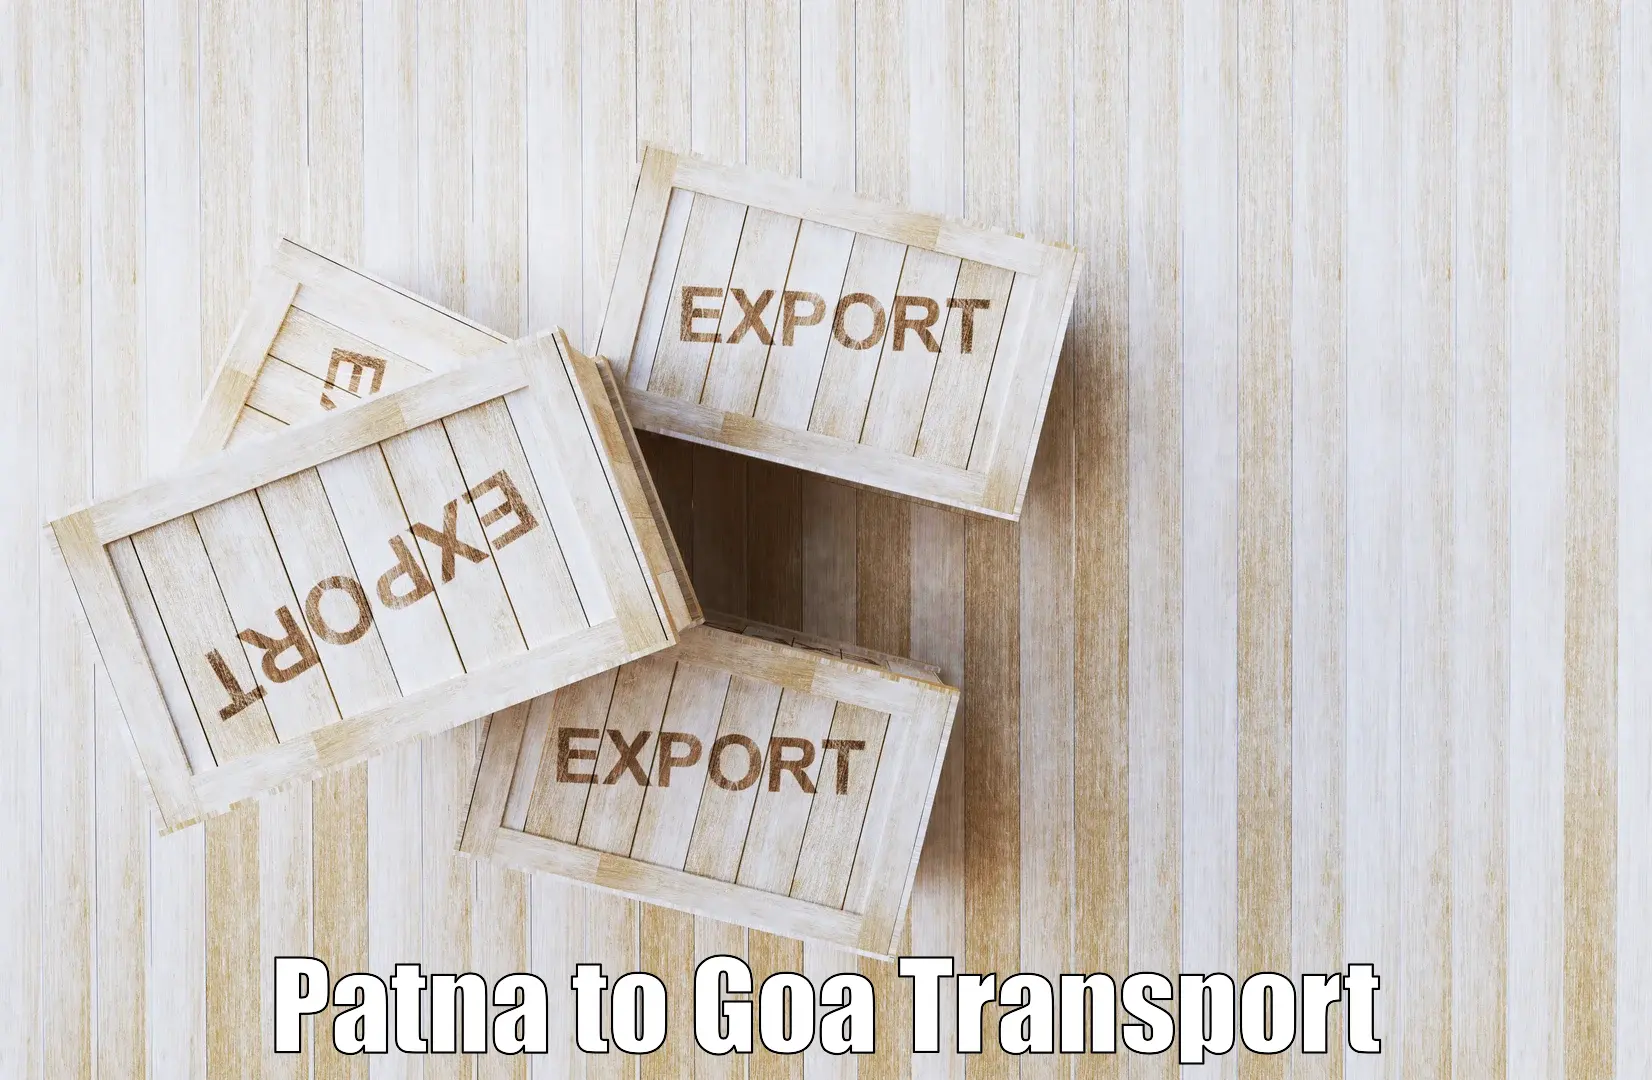 Shipping services Patna to Panaji